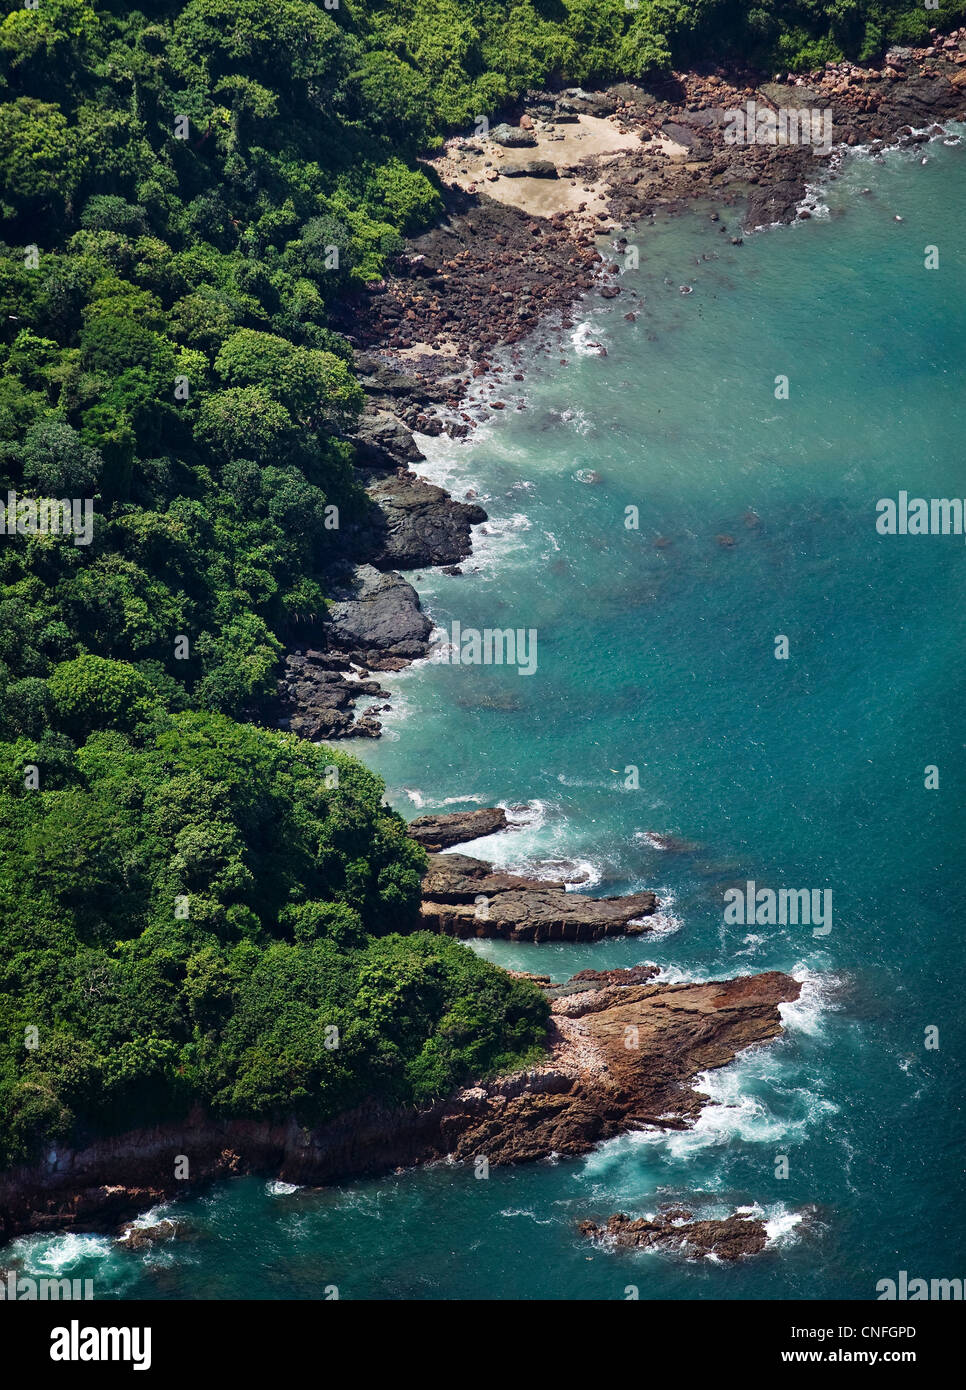 Por encima de la antena de la Isla de Taboga, La Bahía de Panamá Foto de stock